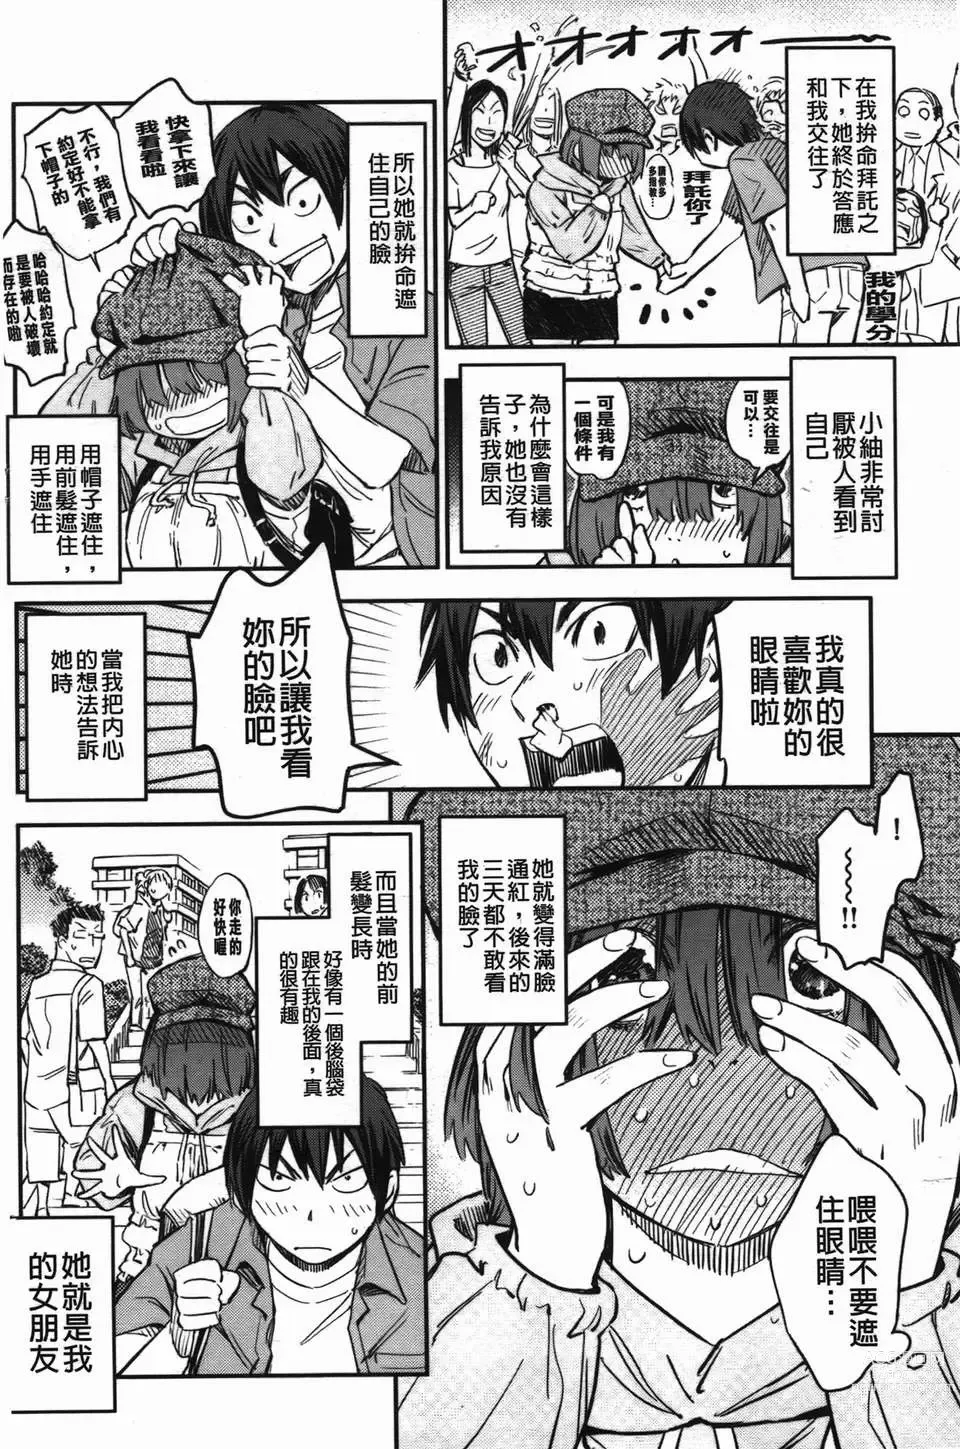 Page 9 of manga おいでませにゃんにゃん